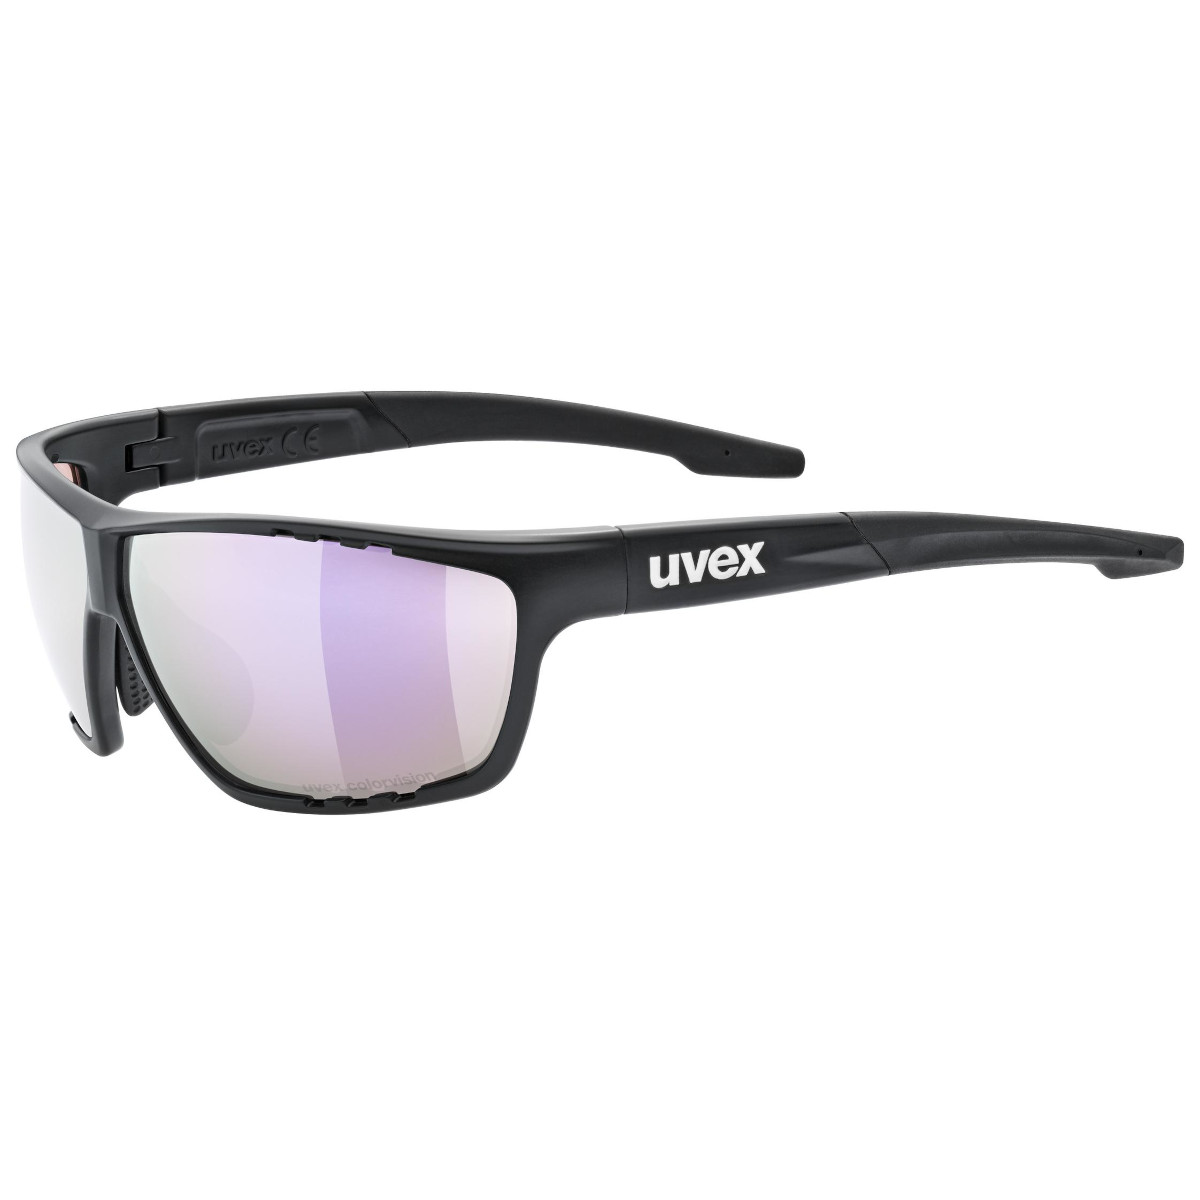 Produktbild von Uvex sportstyle 706 CV Brille - black matt/mirror pink colorvision